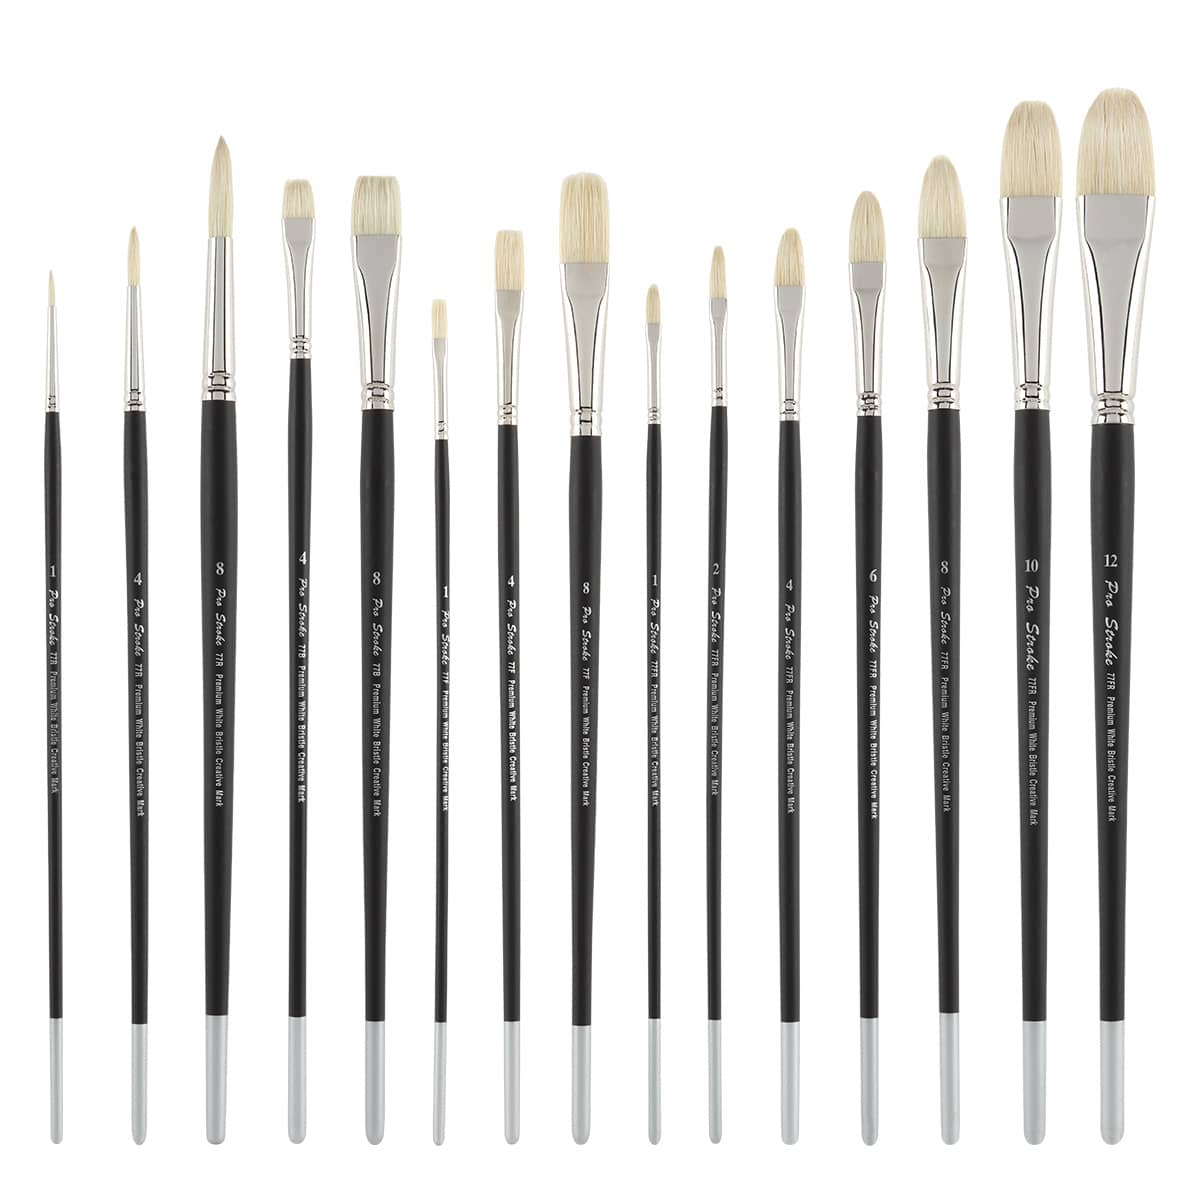  Creative Mark Pro-Stroke Value Set Of 15 Long Handle White Bristle Brushes